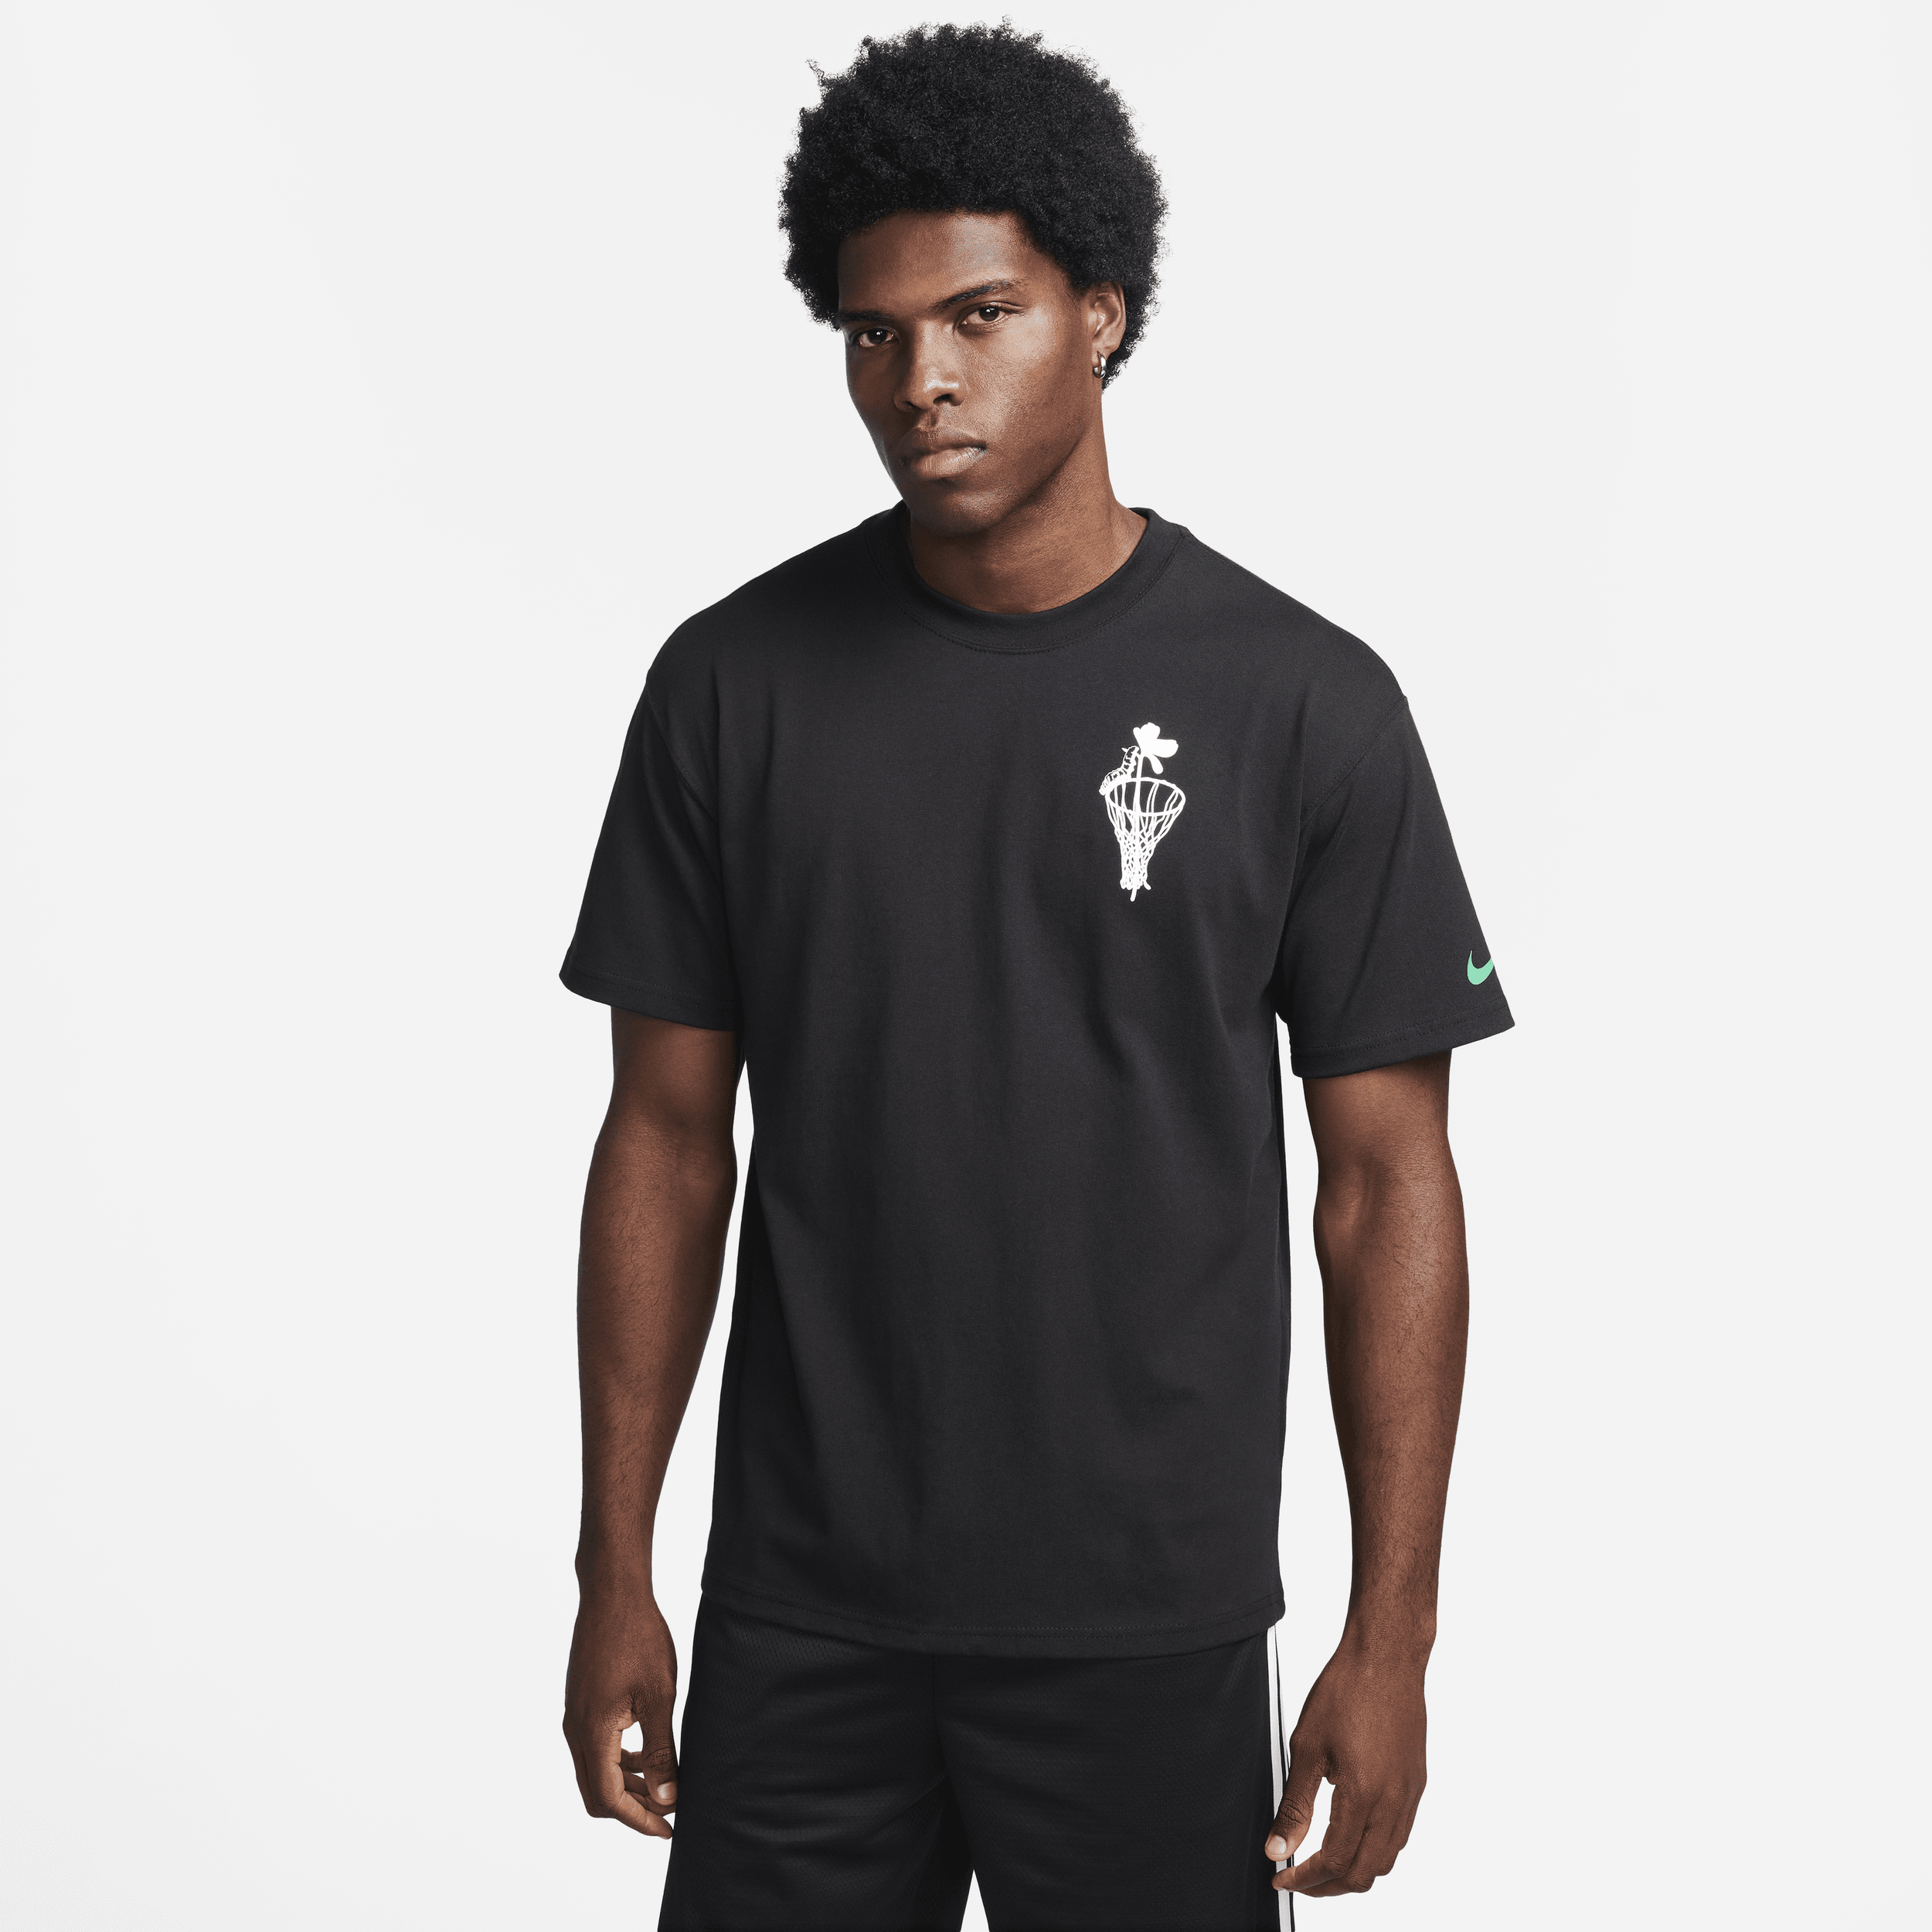 Nike Max90-basketball-T-shirt til mænd - sort